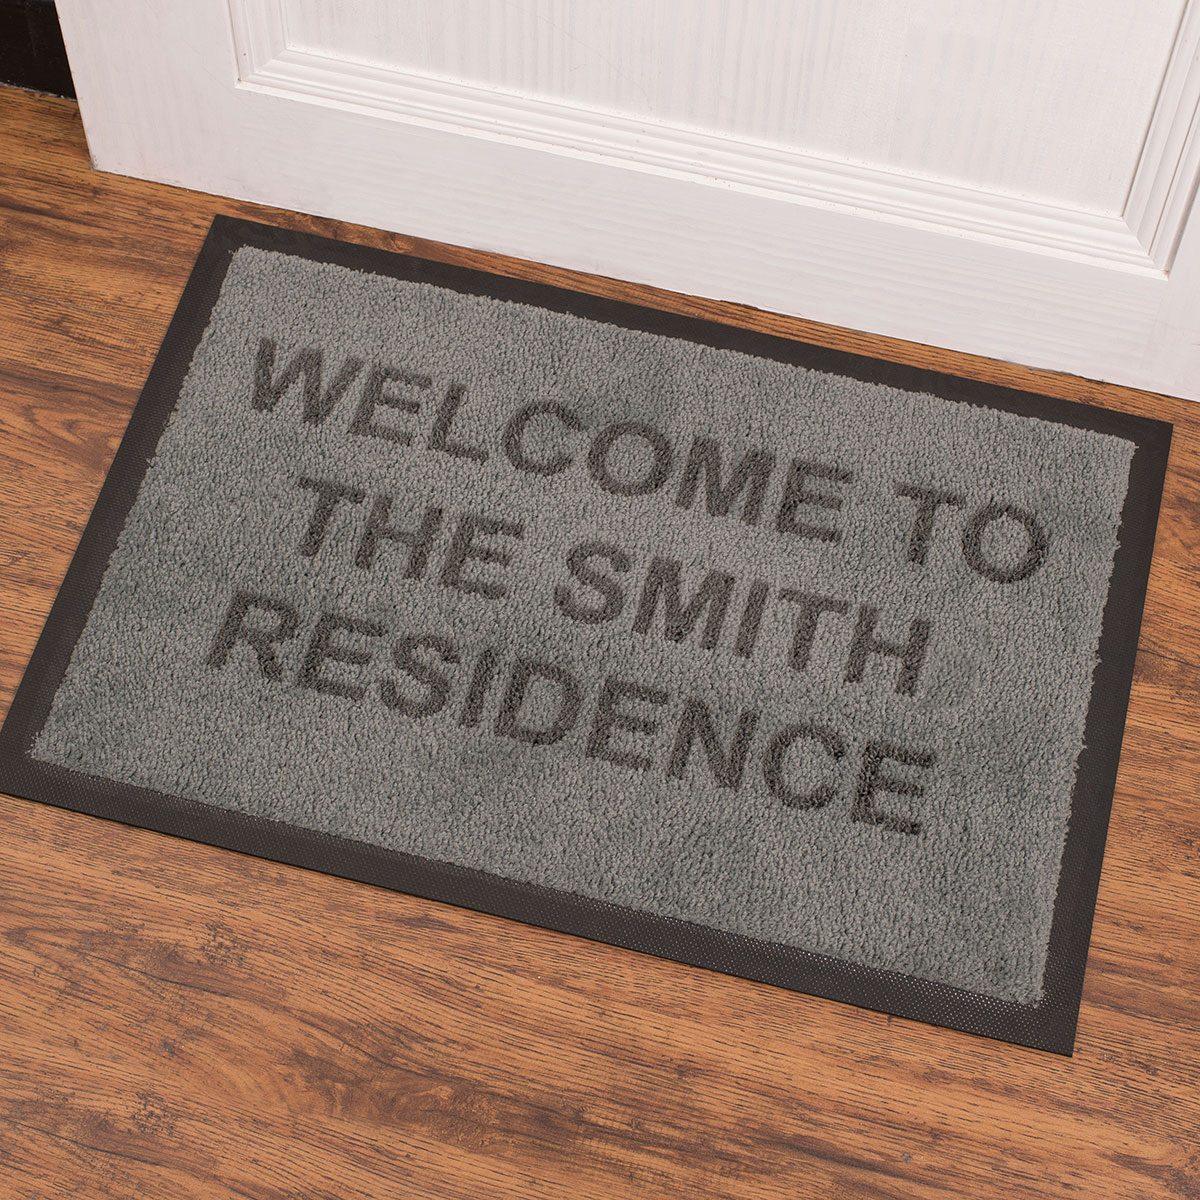 Personalised Indoor Doormat